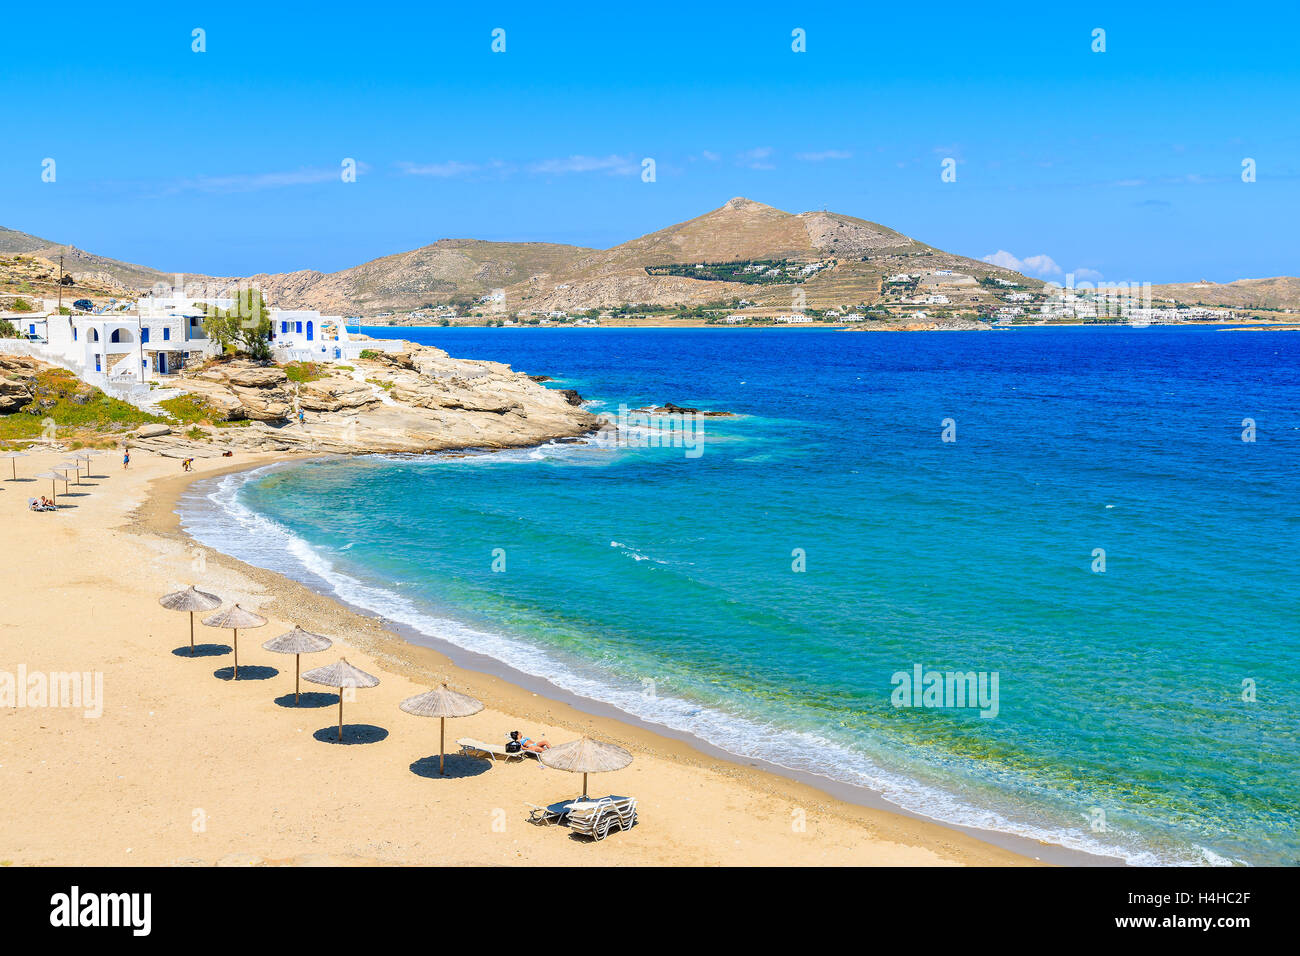 Ein Blick auf die wunderschöne Bucht mit Strand in Naoussa Village, Insel Paros, Kykladen, Griechenland Stockfoto